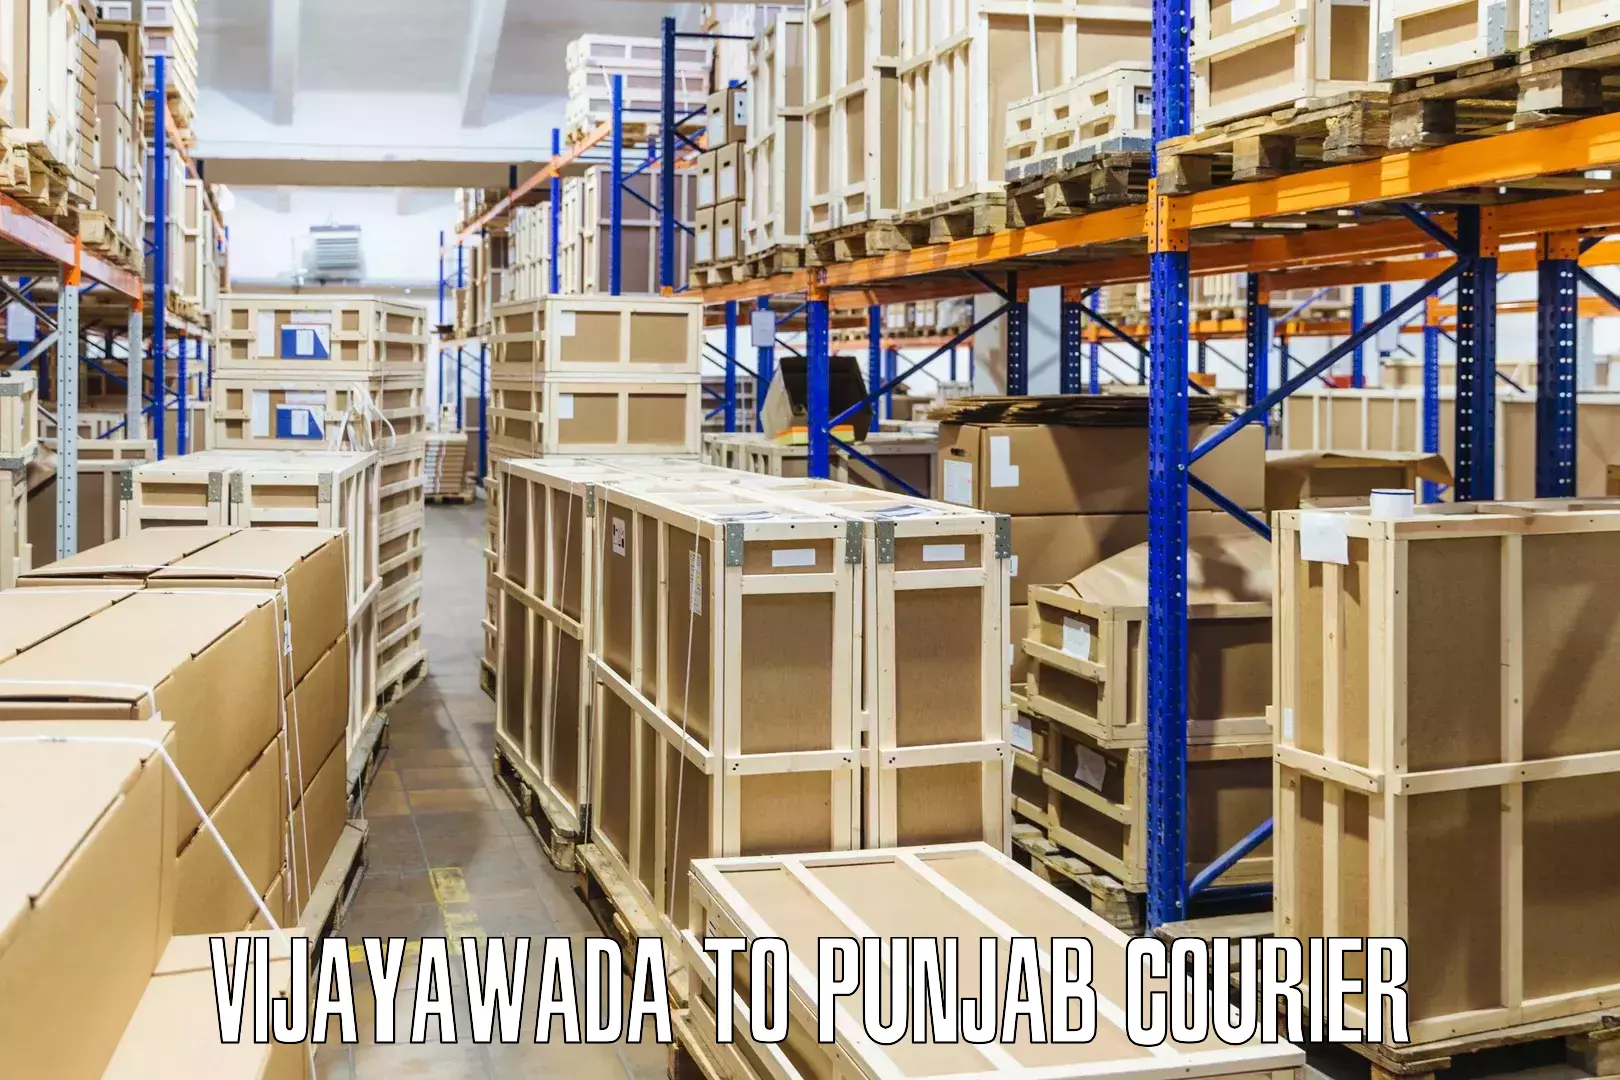 Reliable courier services Vijayawada to Punjab